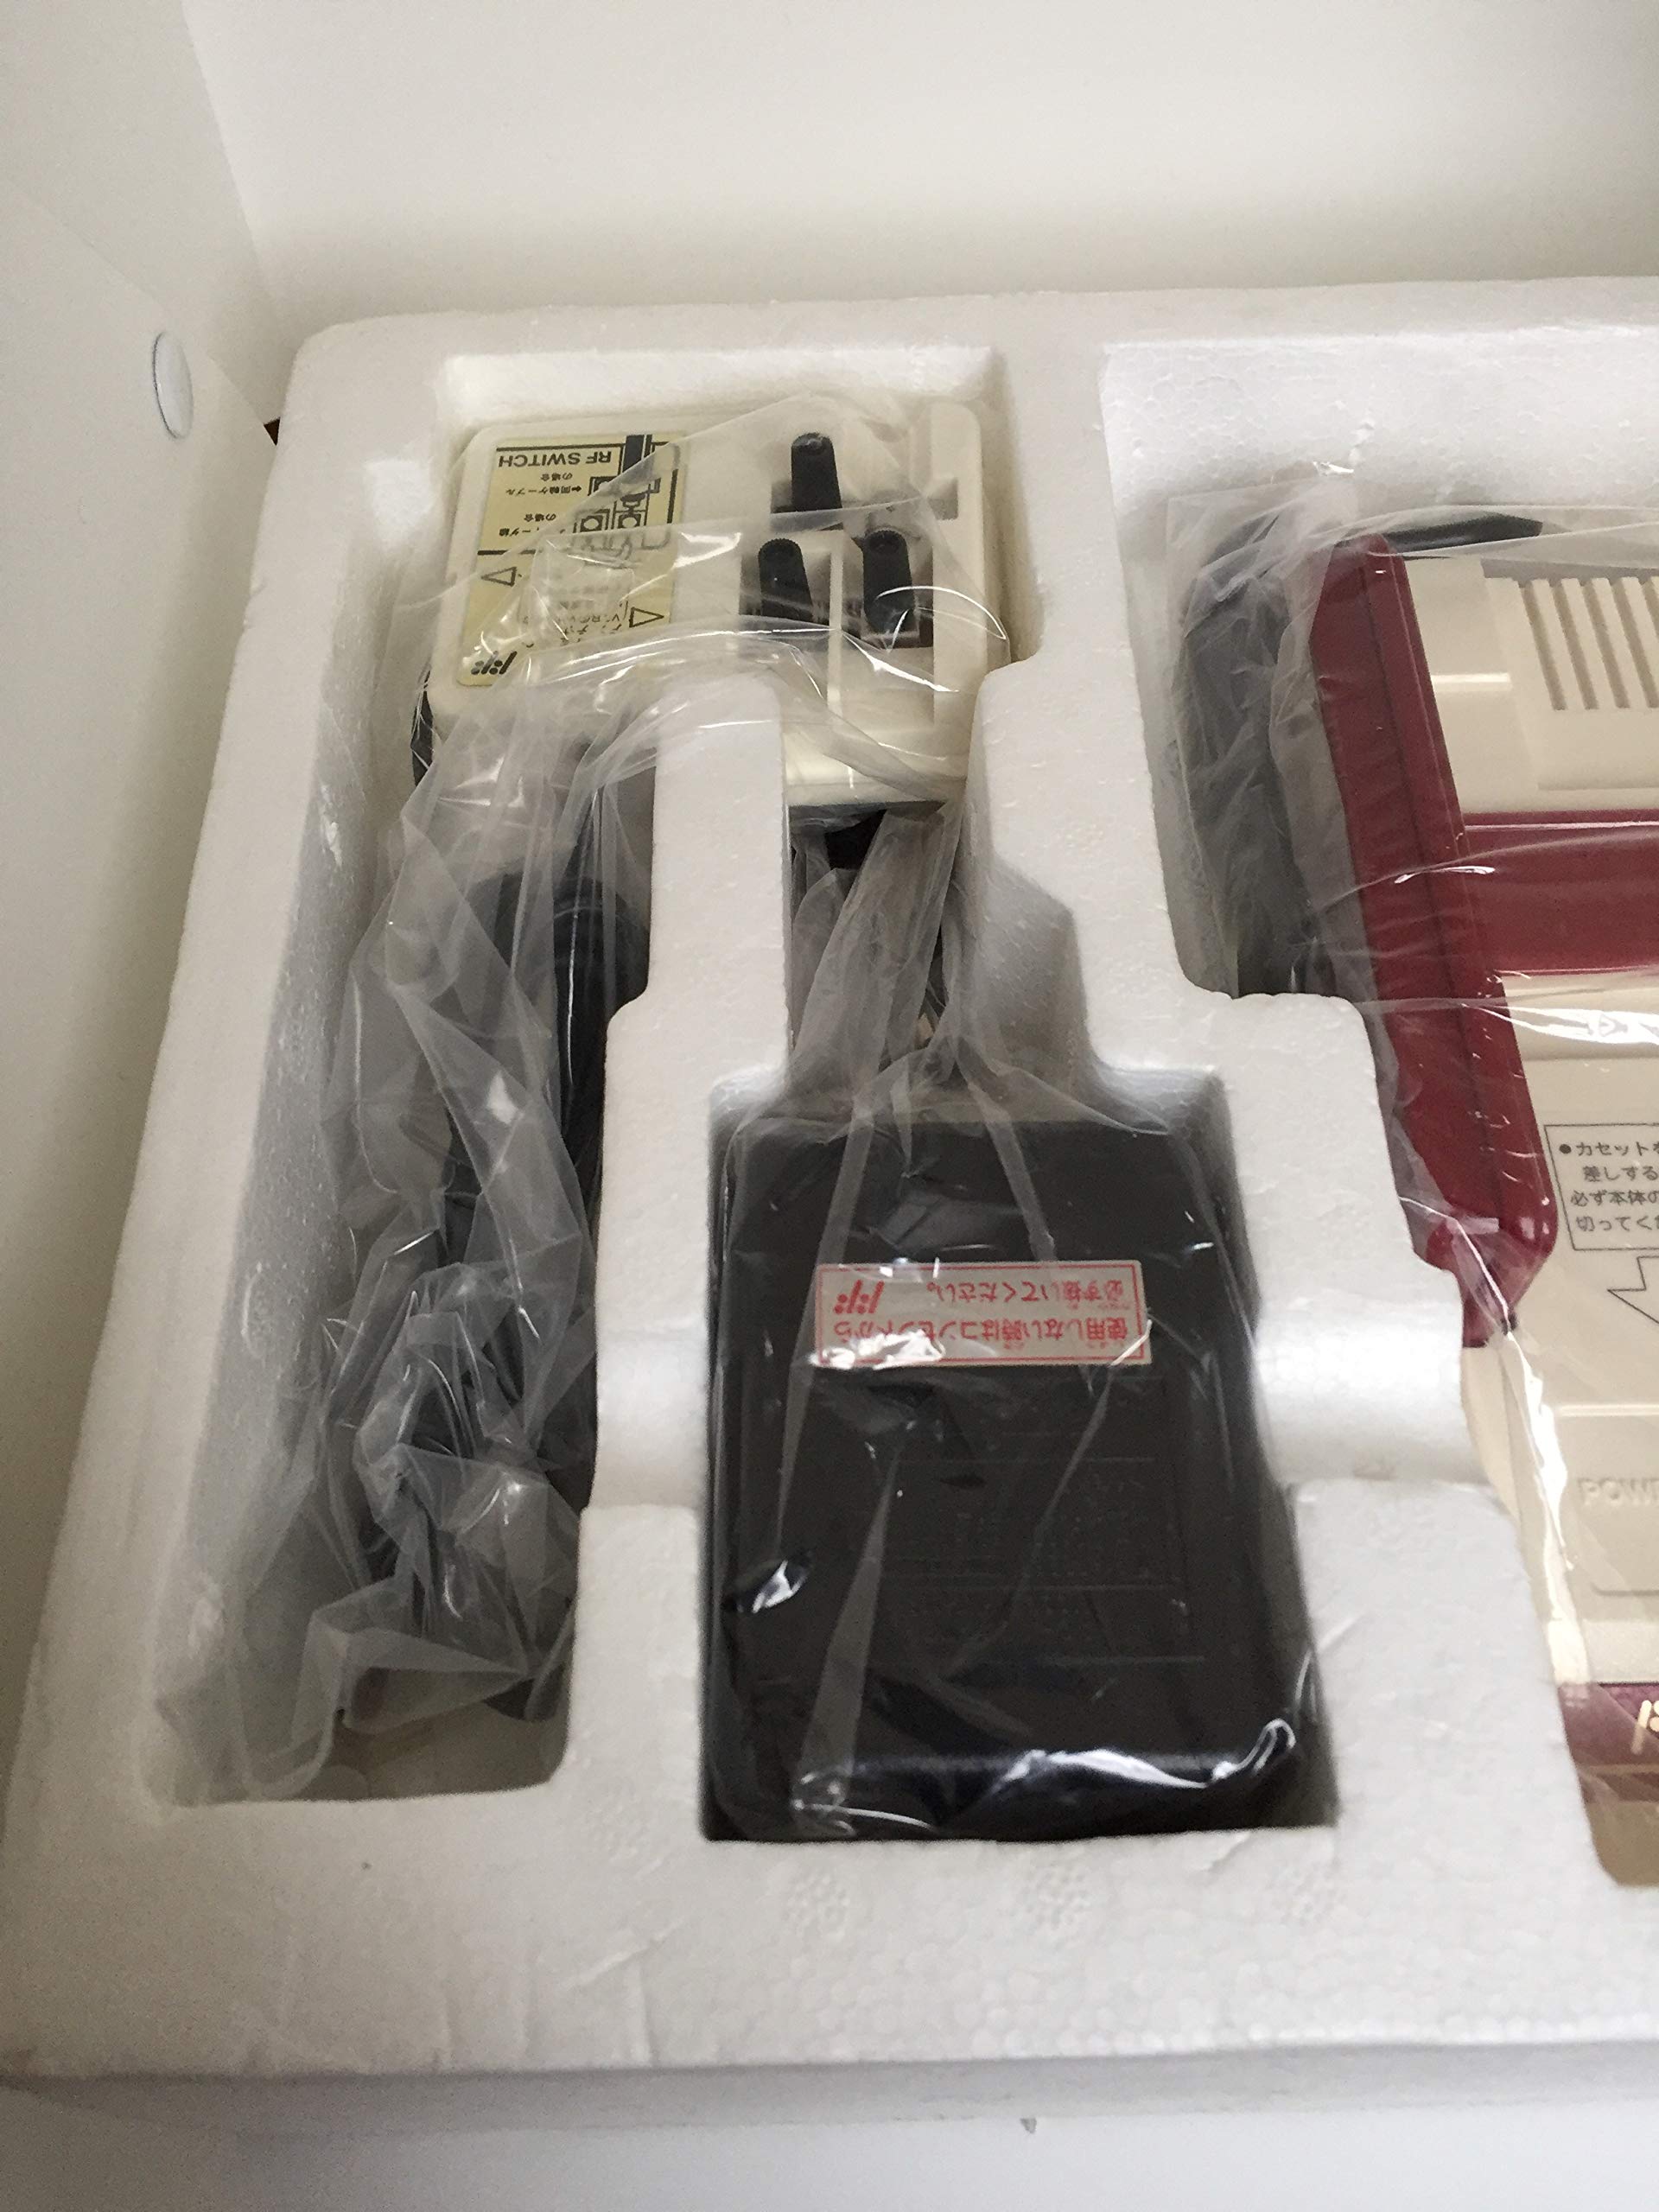 Nintendo Famicom (Family Computer System), Original 1983 Japanese Console